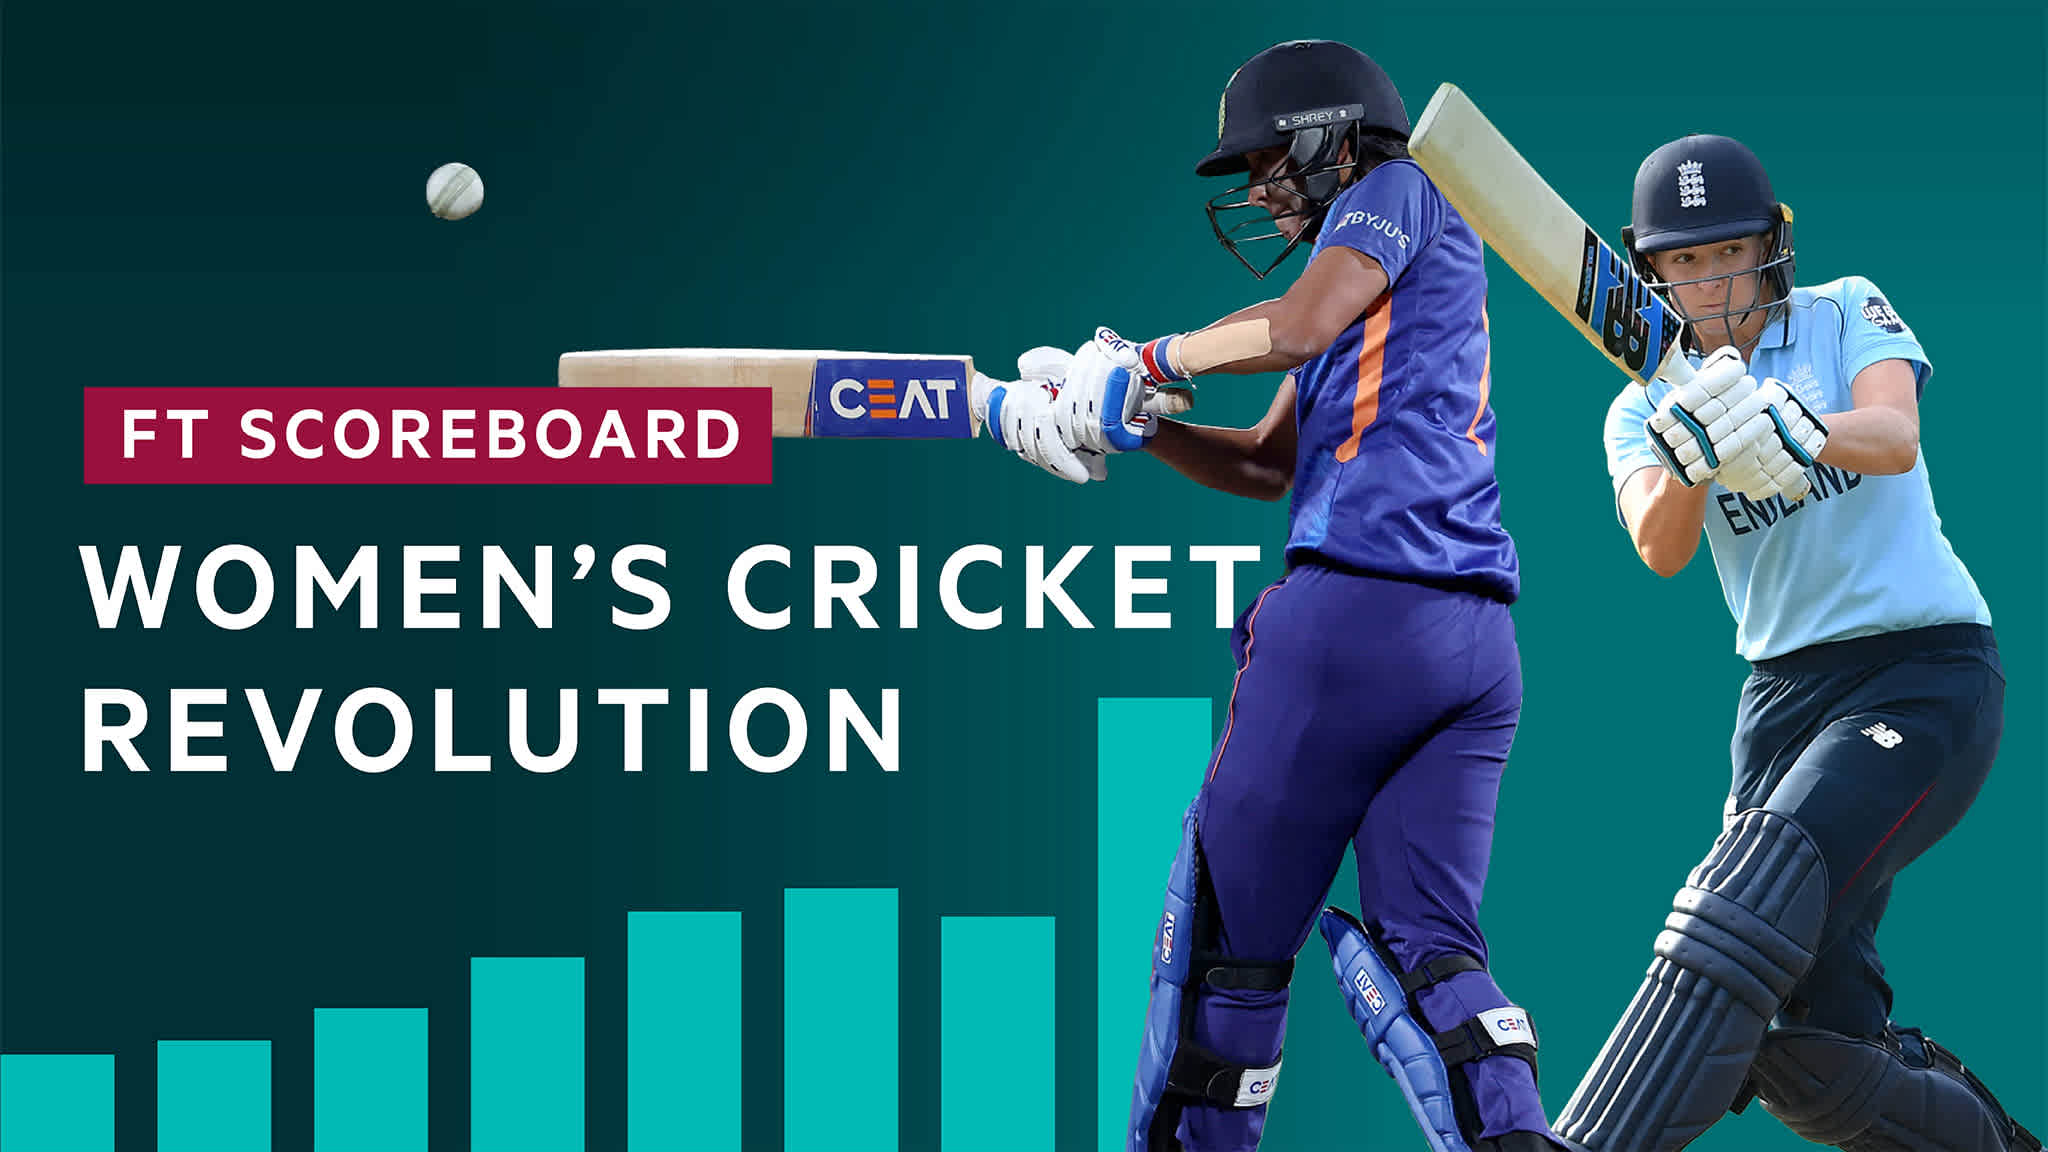 FT Scoreboard: Women's cricket revolution